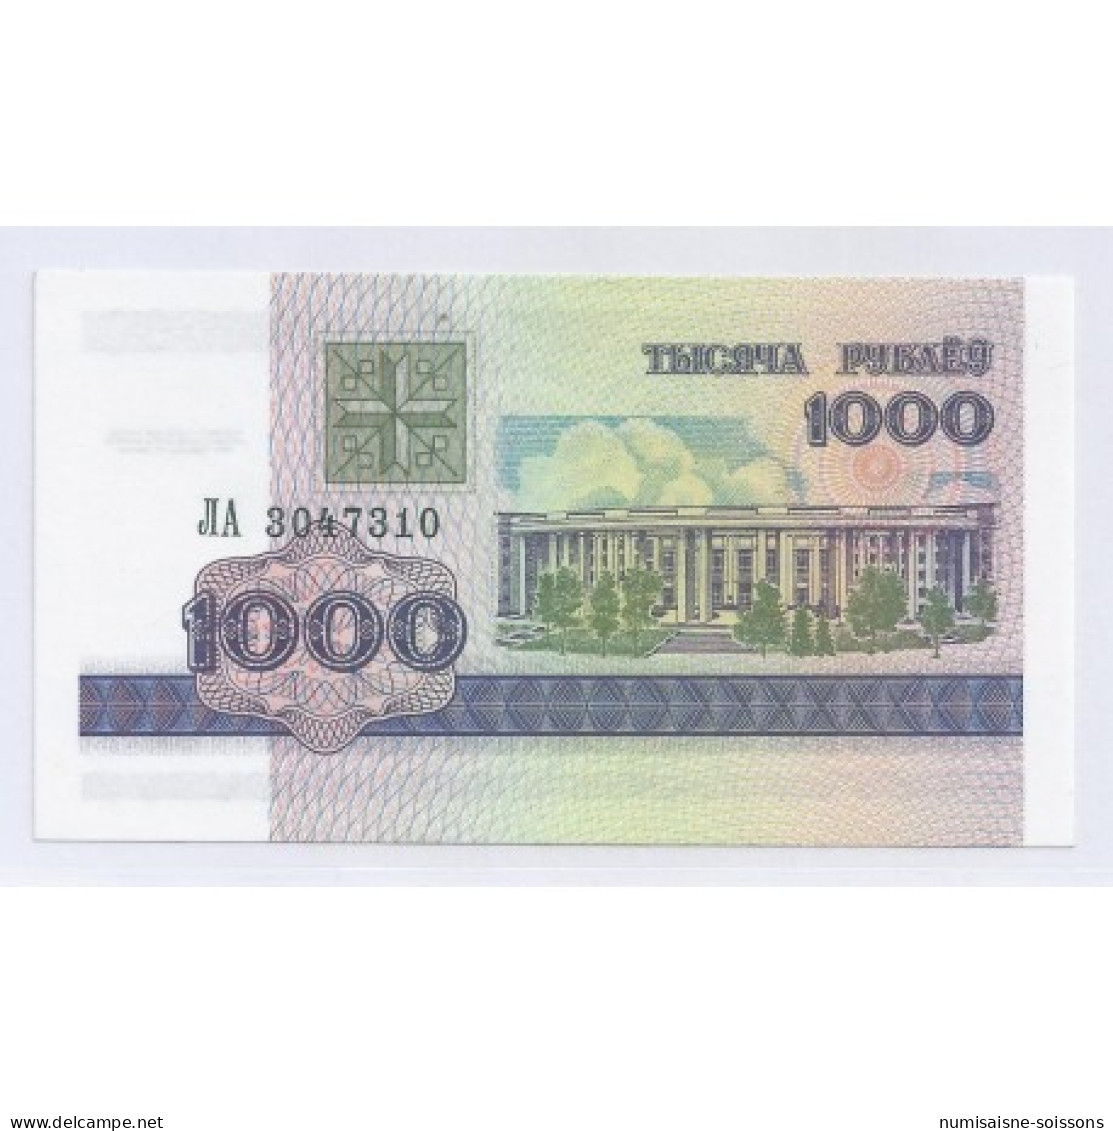 BIELORUSSIE - PICK 16 - 1 000 RUBLEI 1998 - NEUF - Bielorussia